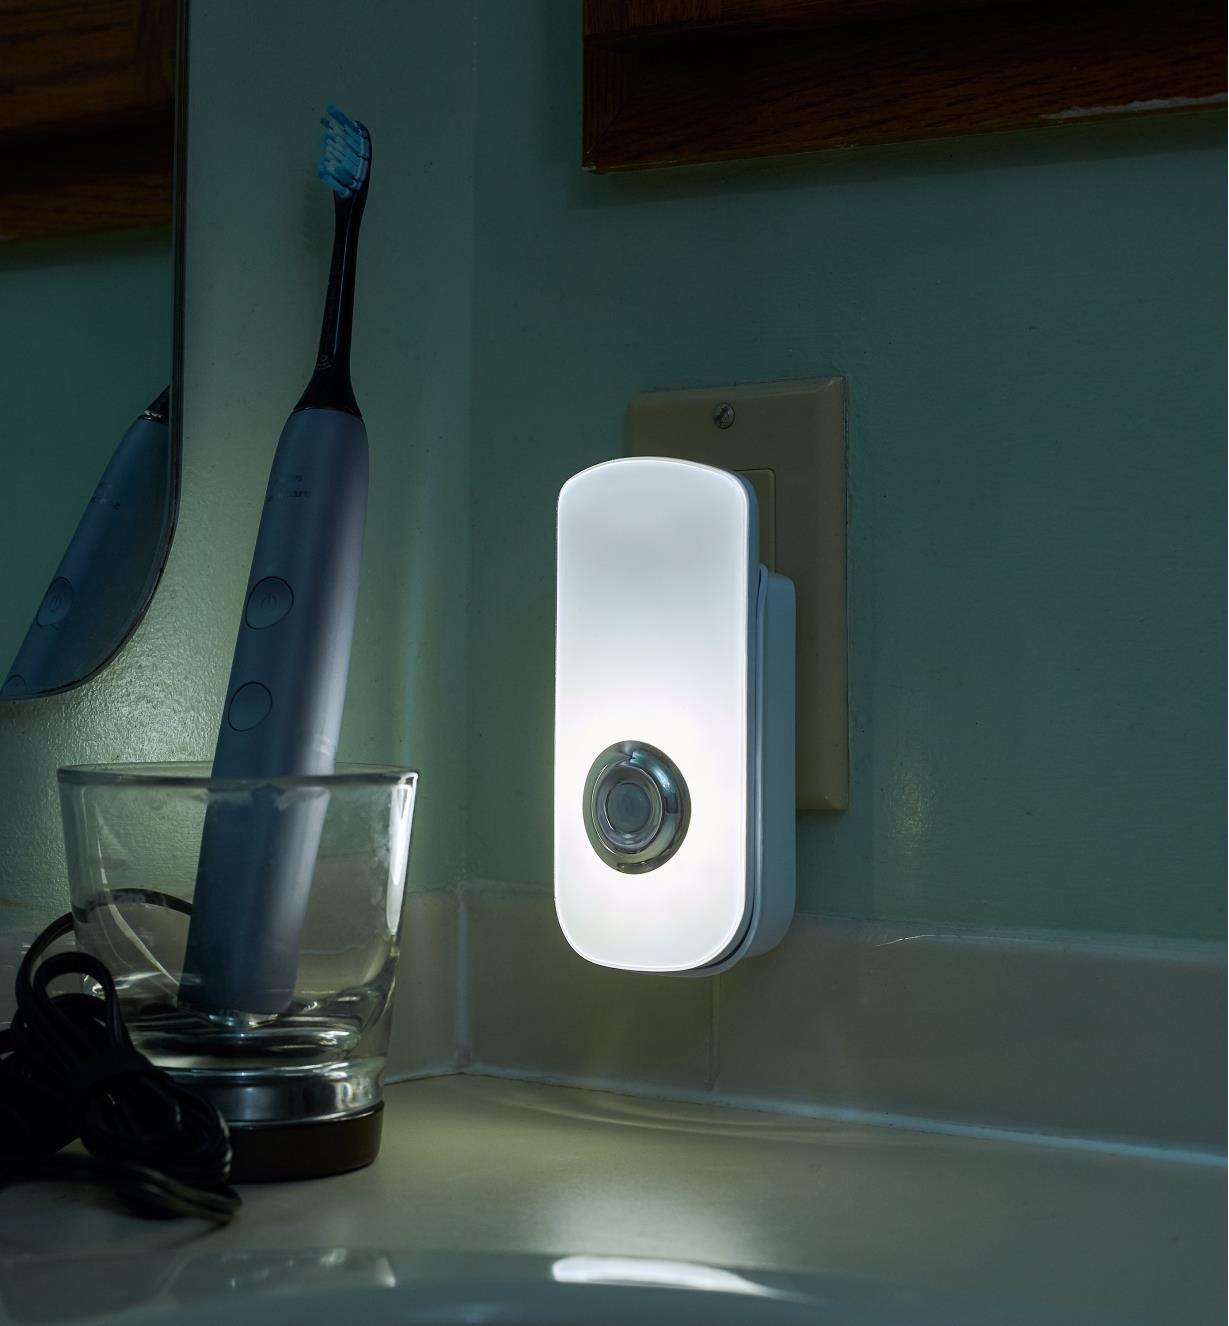 Veilleuse-lampe de poche rechargeable à DEL branchée dans une prise standard